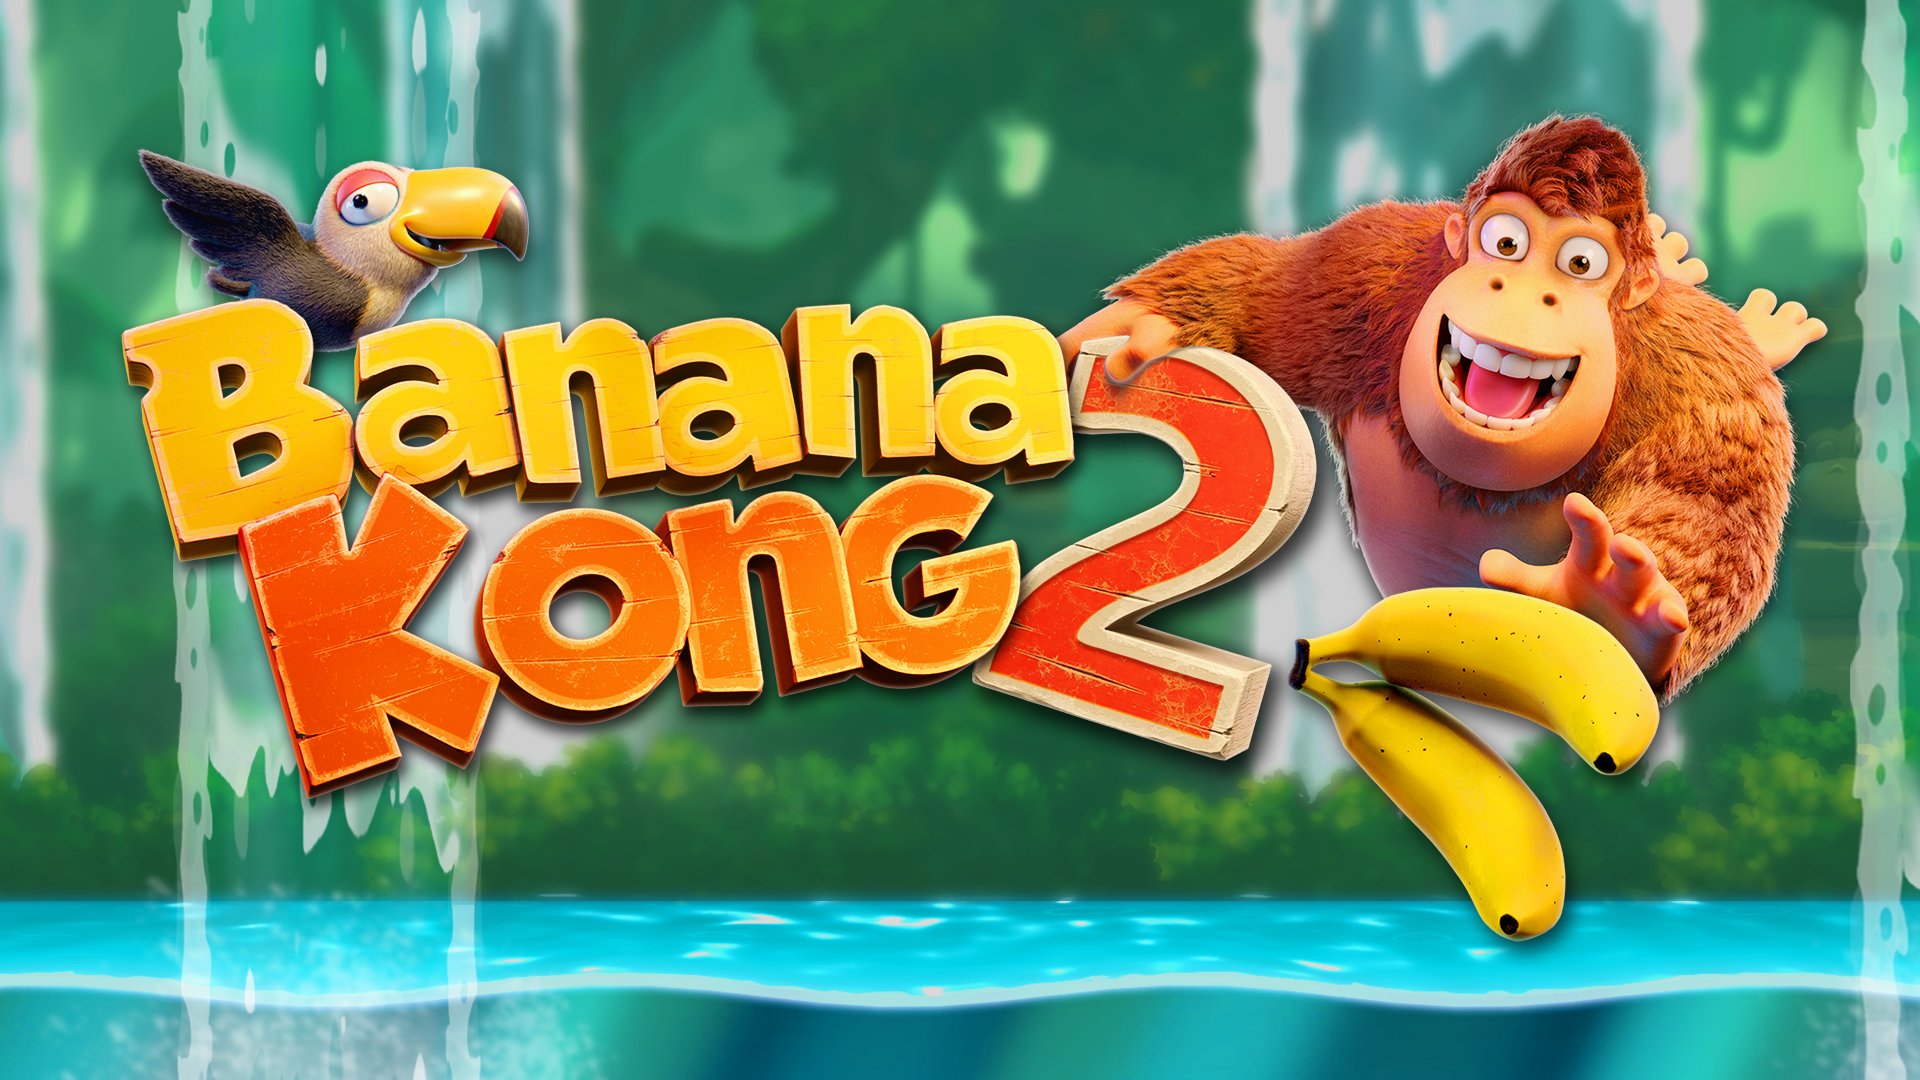 دنباله بازی موبایلی محبوب Banana Kong، پس از ده سال انتظار معرفی شد